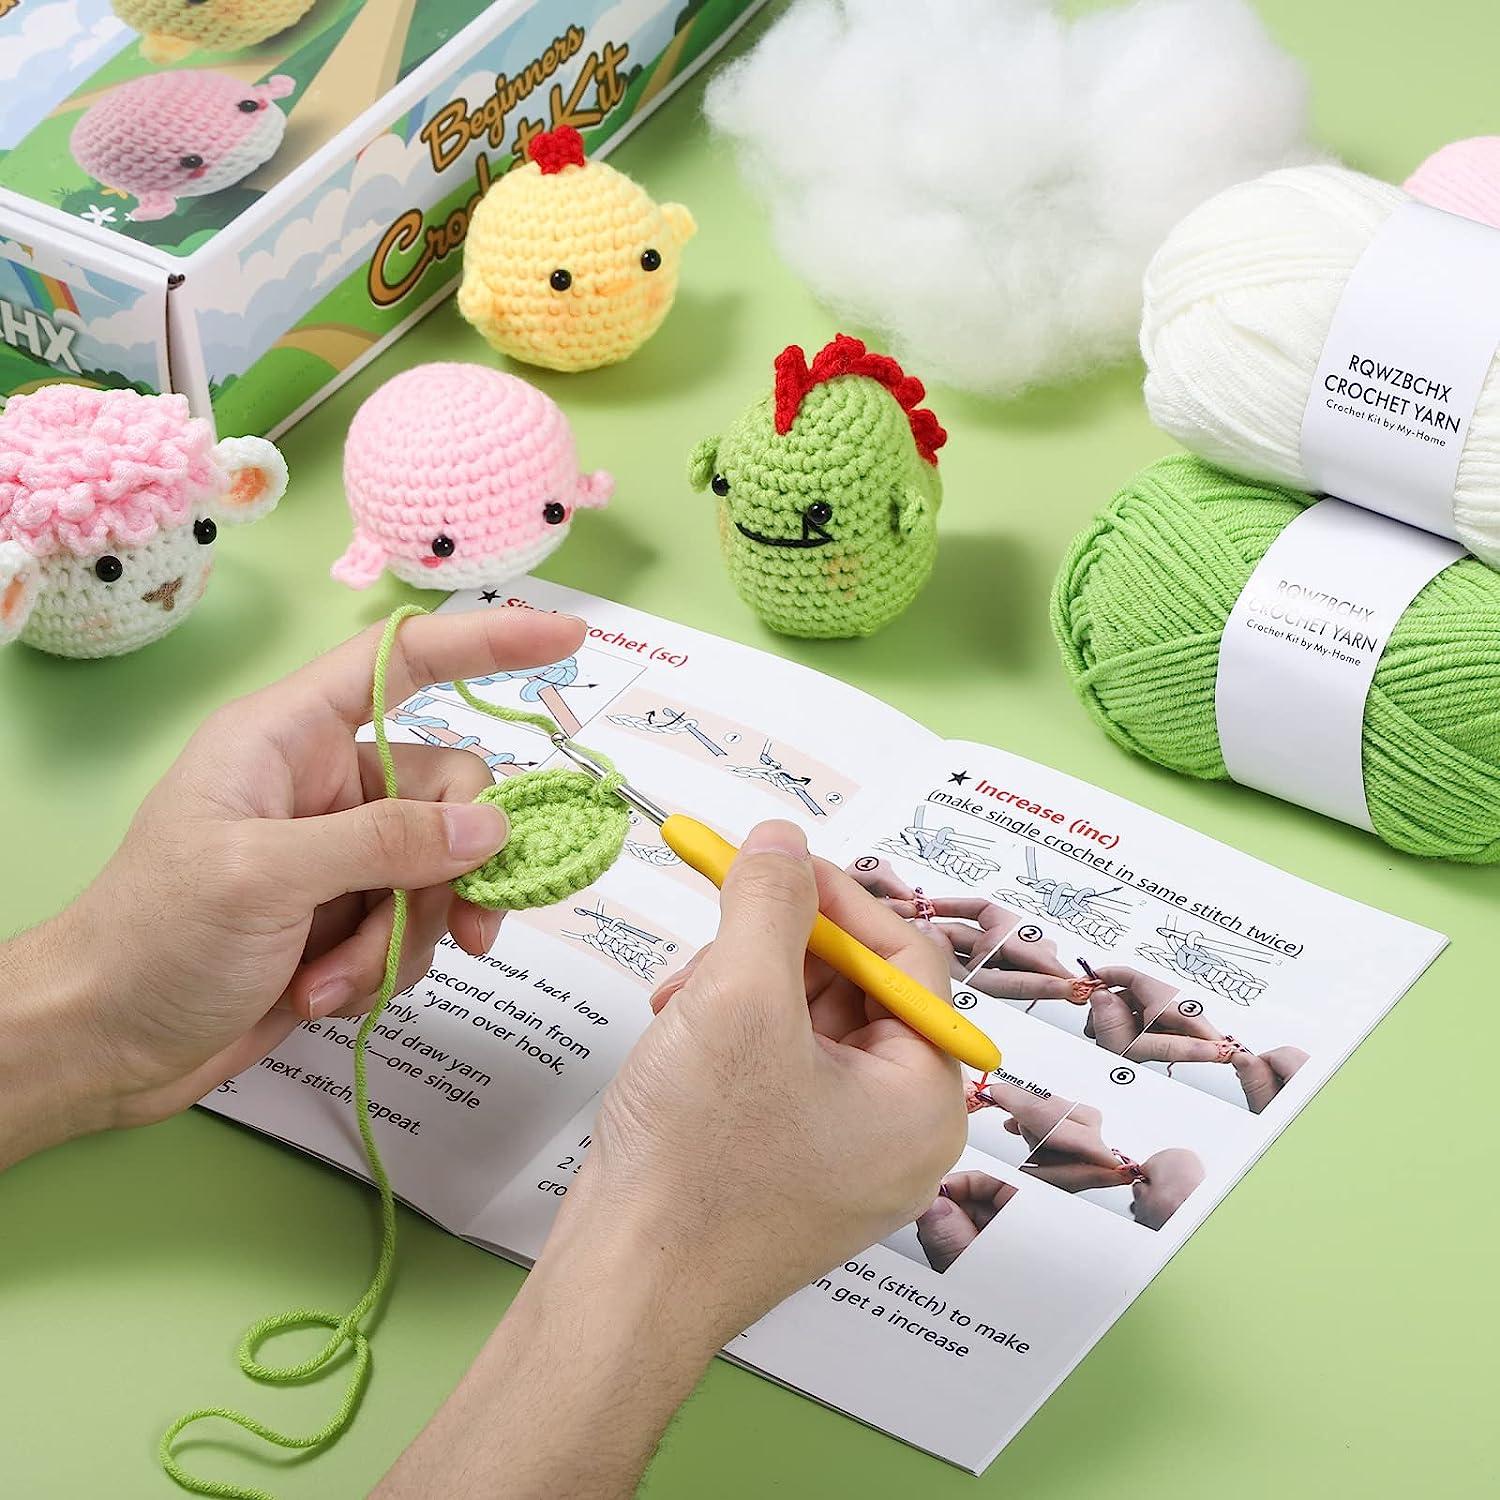  2 Set Crochet Kit Animals, DIY Crochet Kit For